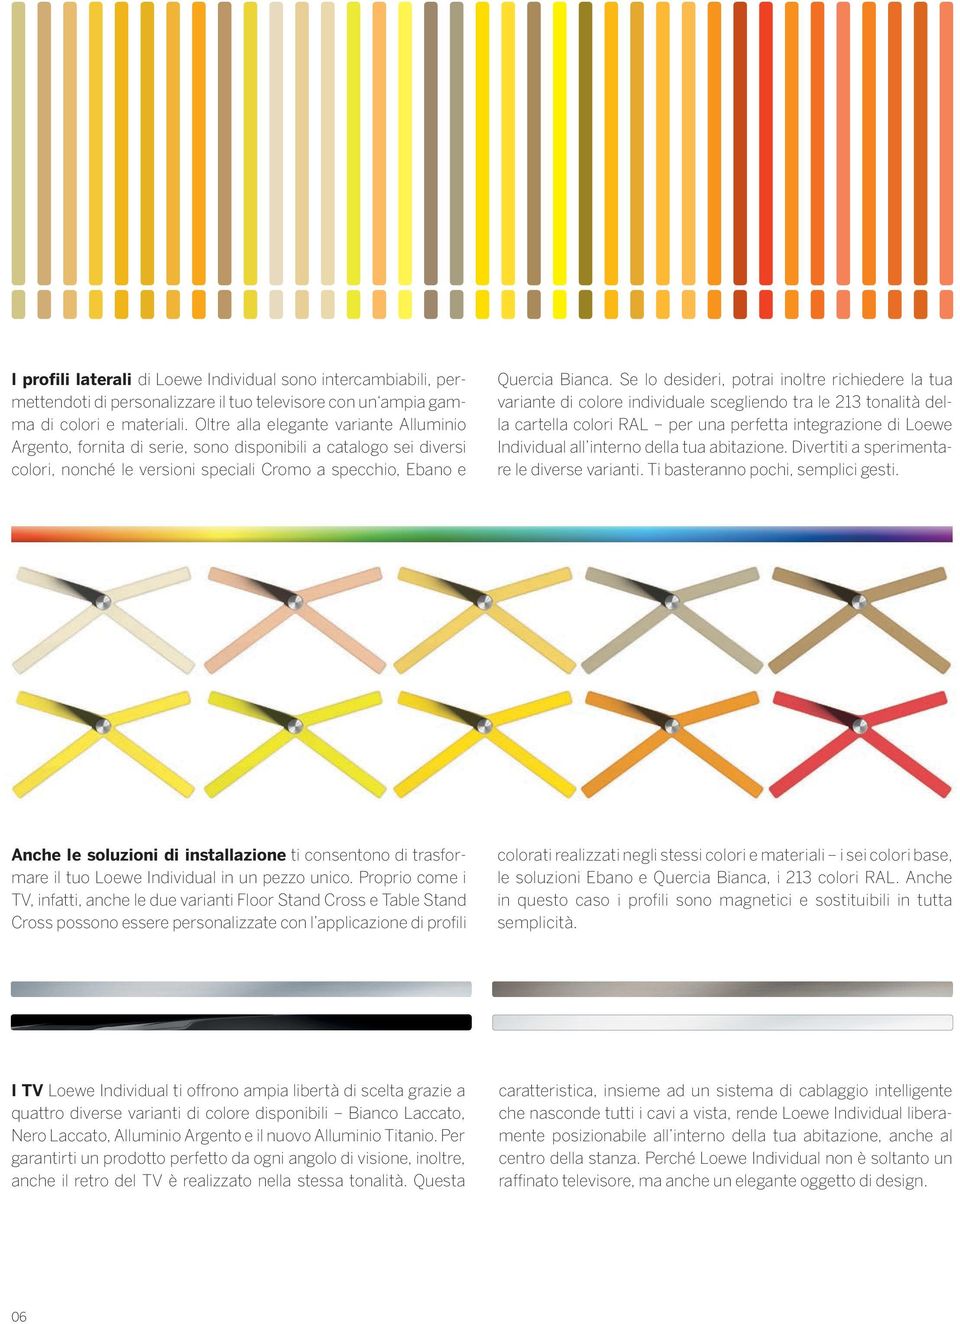 Se lo desideri, potrai inoltre richiedere la tua variante di colore individuale scegliendo tra le 213 tonalità della cartella colori RAL per una perfetta integrazione di Loewe Individual all interno